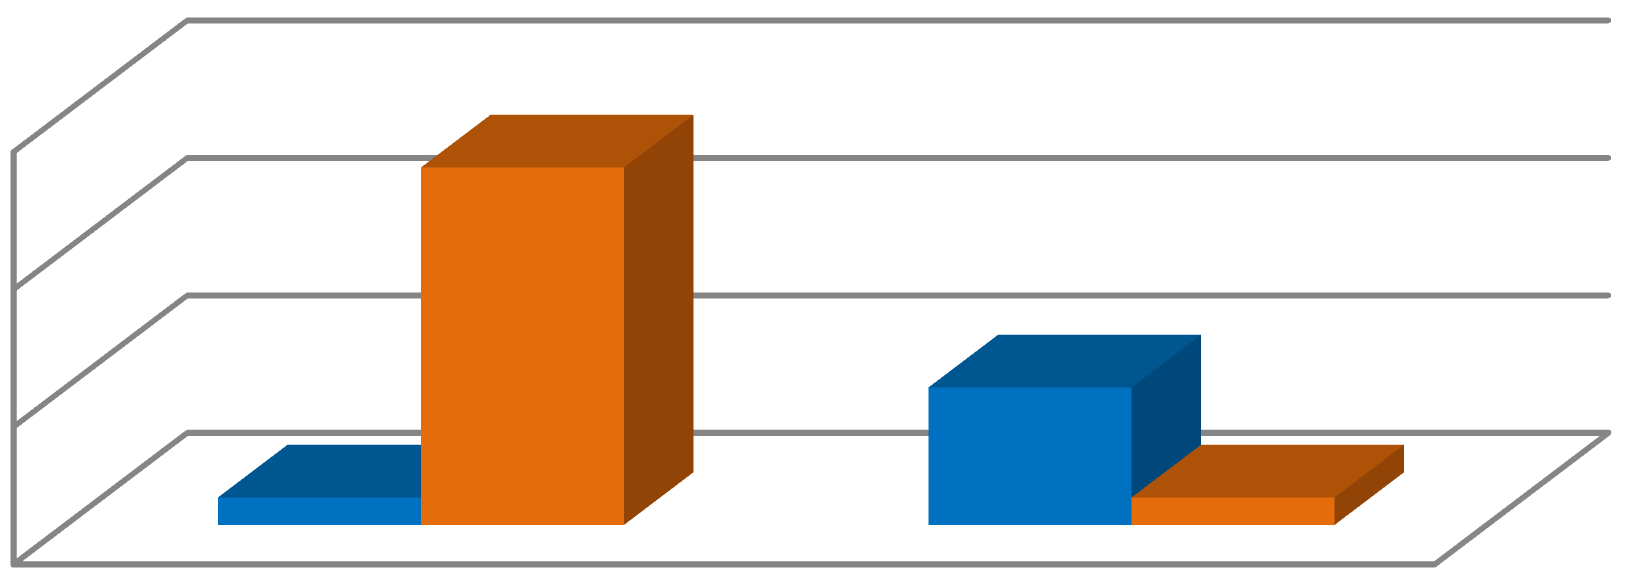 Brát sortiment, ceny a akční letáky. Většina firem využívá systém ORDIS, a pouze jeden živnostník z 14 dotazovaných živnostníků využívá systému ORDIS (viz graf 8).